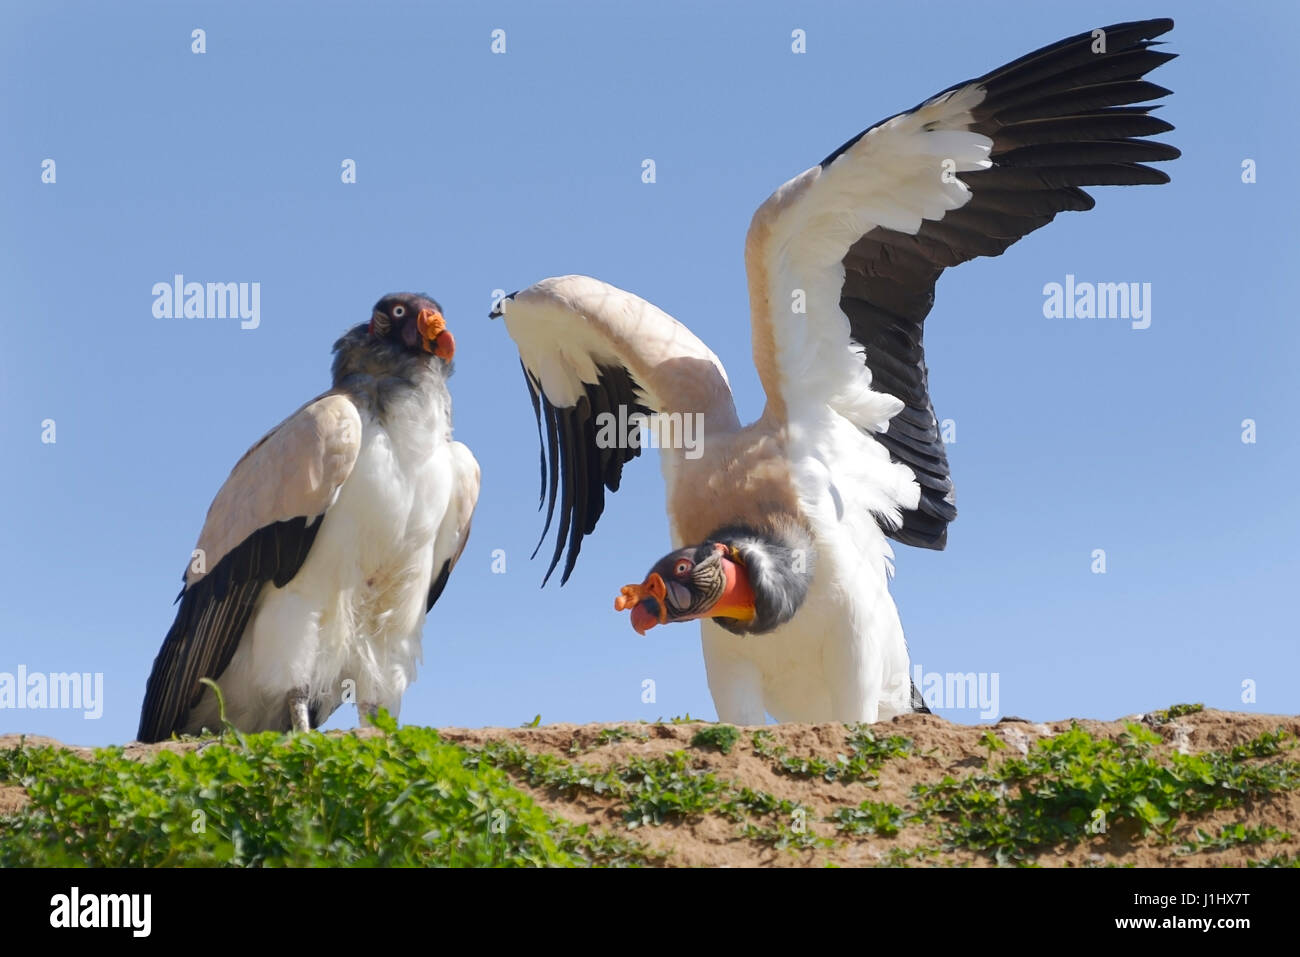 Deux vautours (Sarcoramphus papa) ailes écartées en falaise sur fond de ciel bleu Banque D'Images